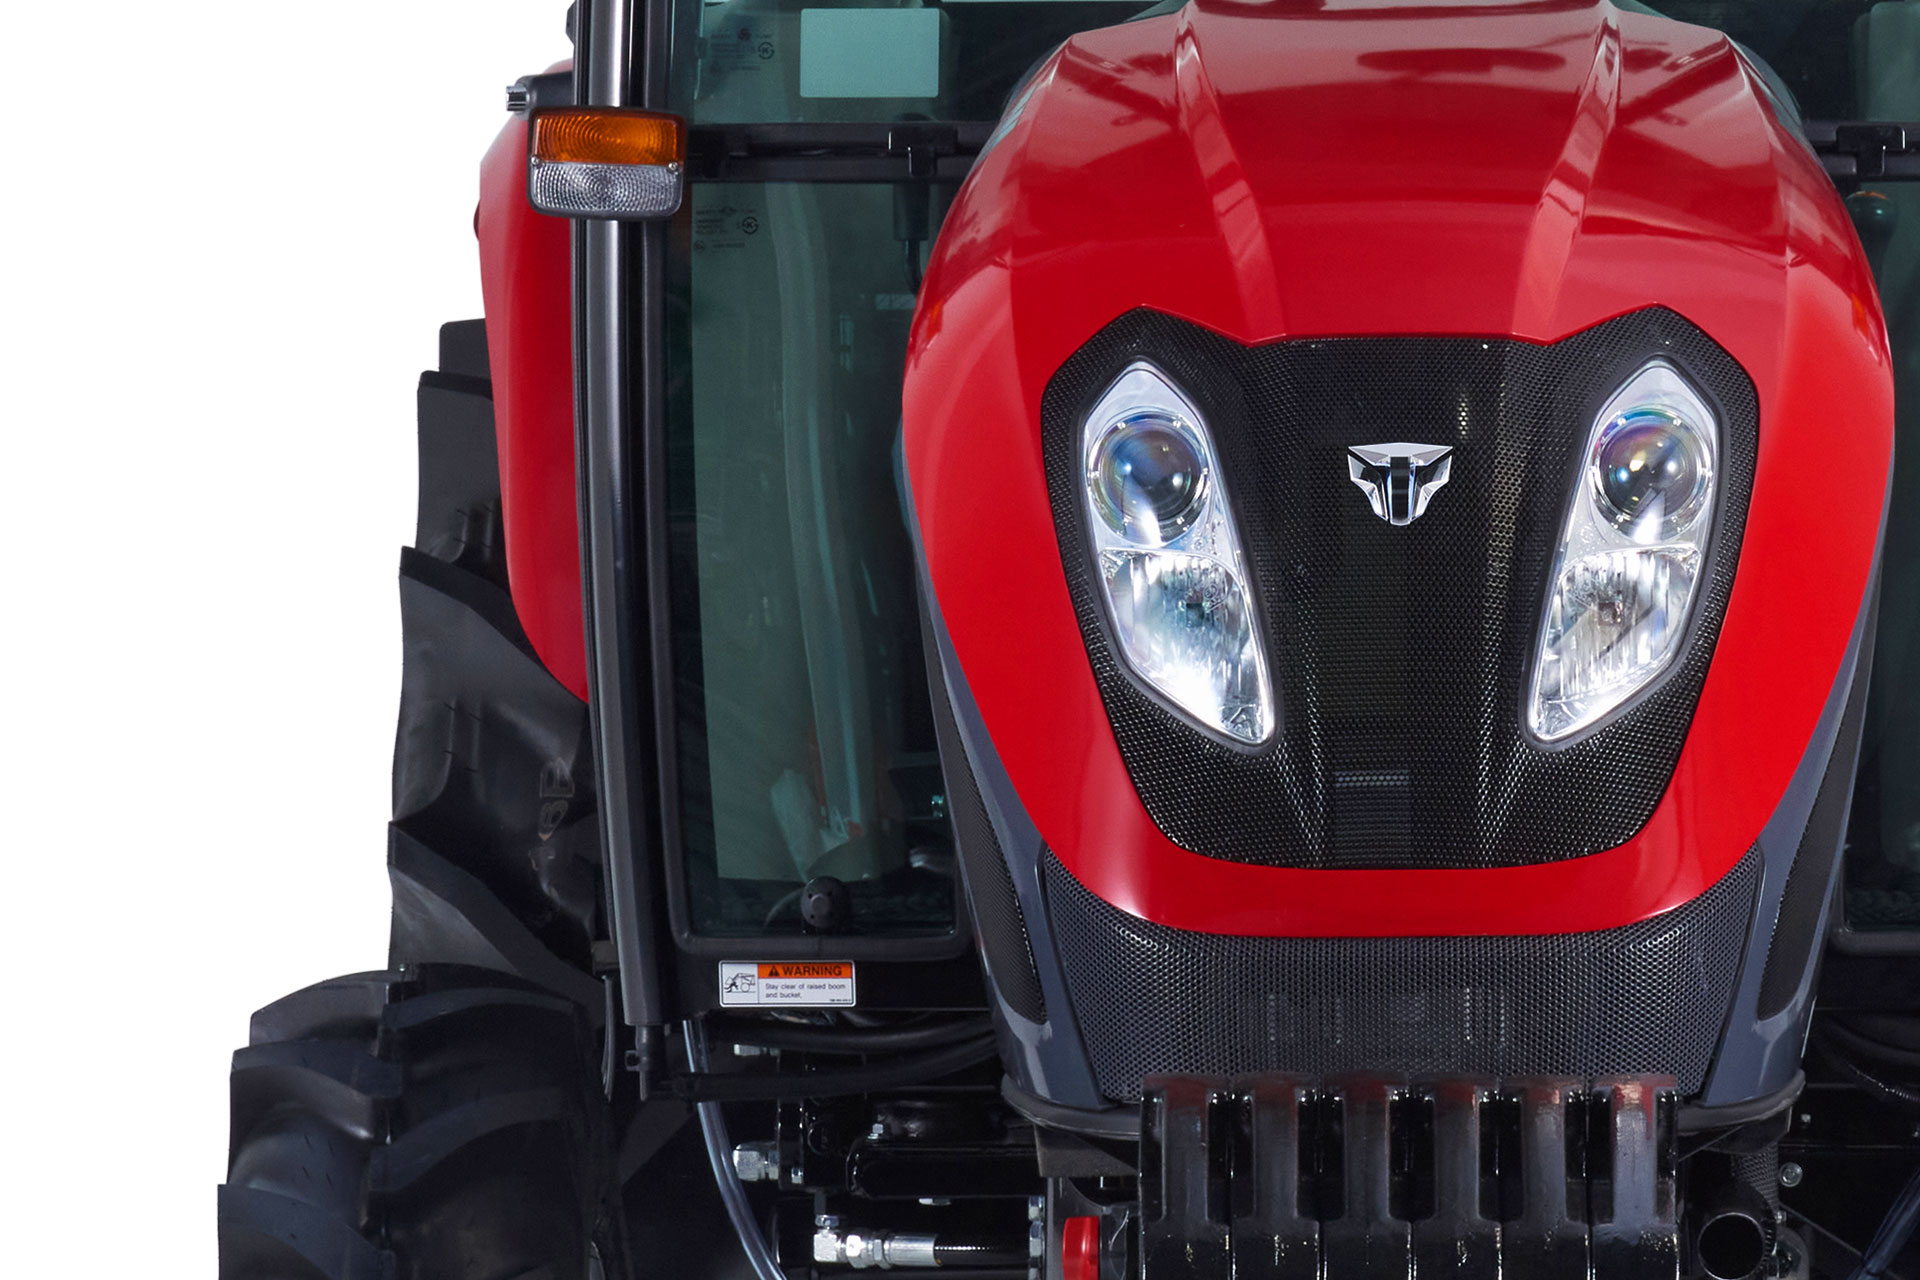 T454 tractor comparison